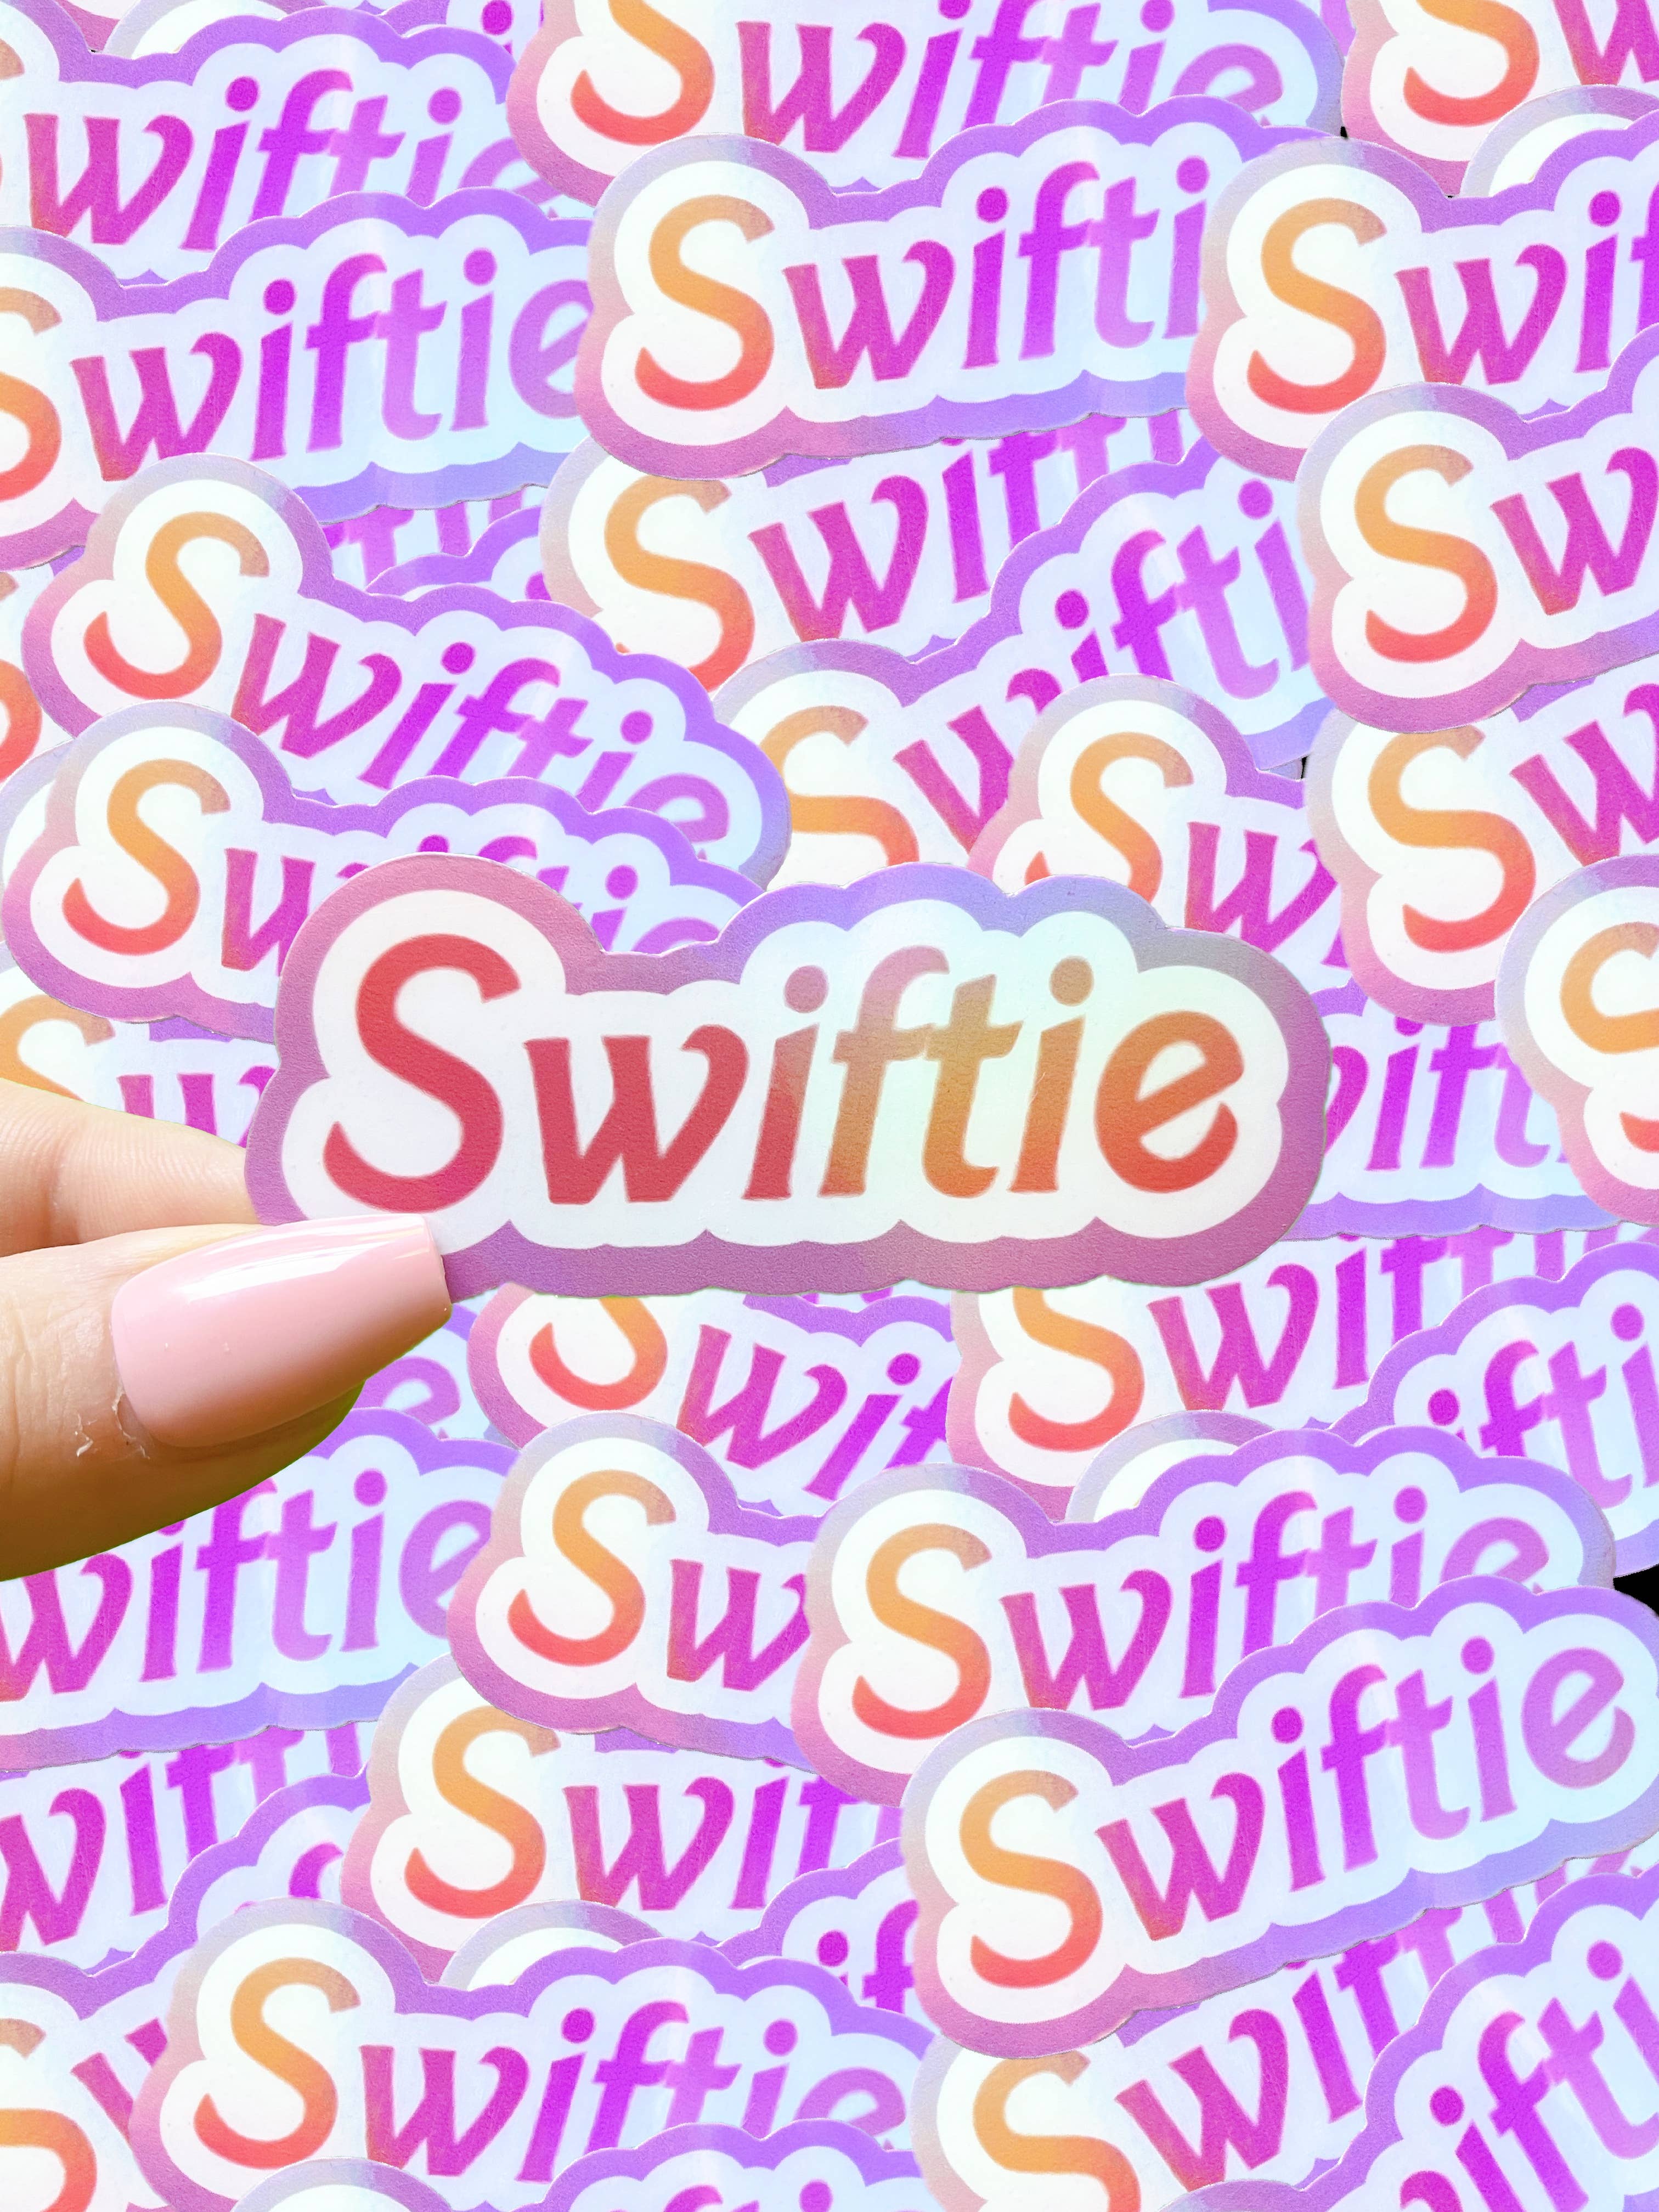 Swiftie holographic sticker